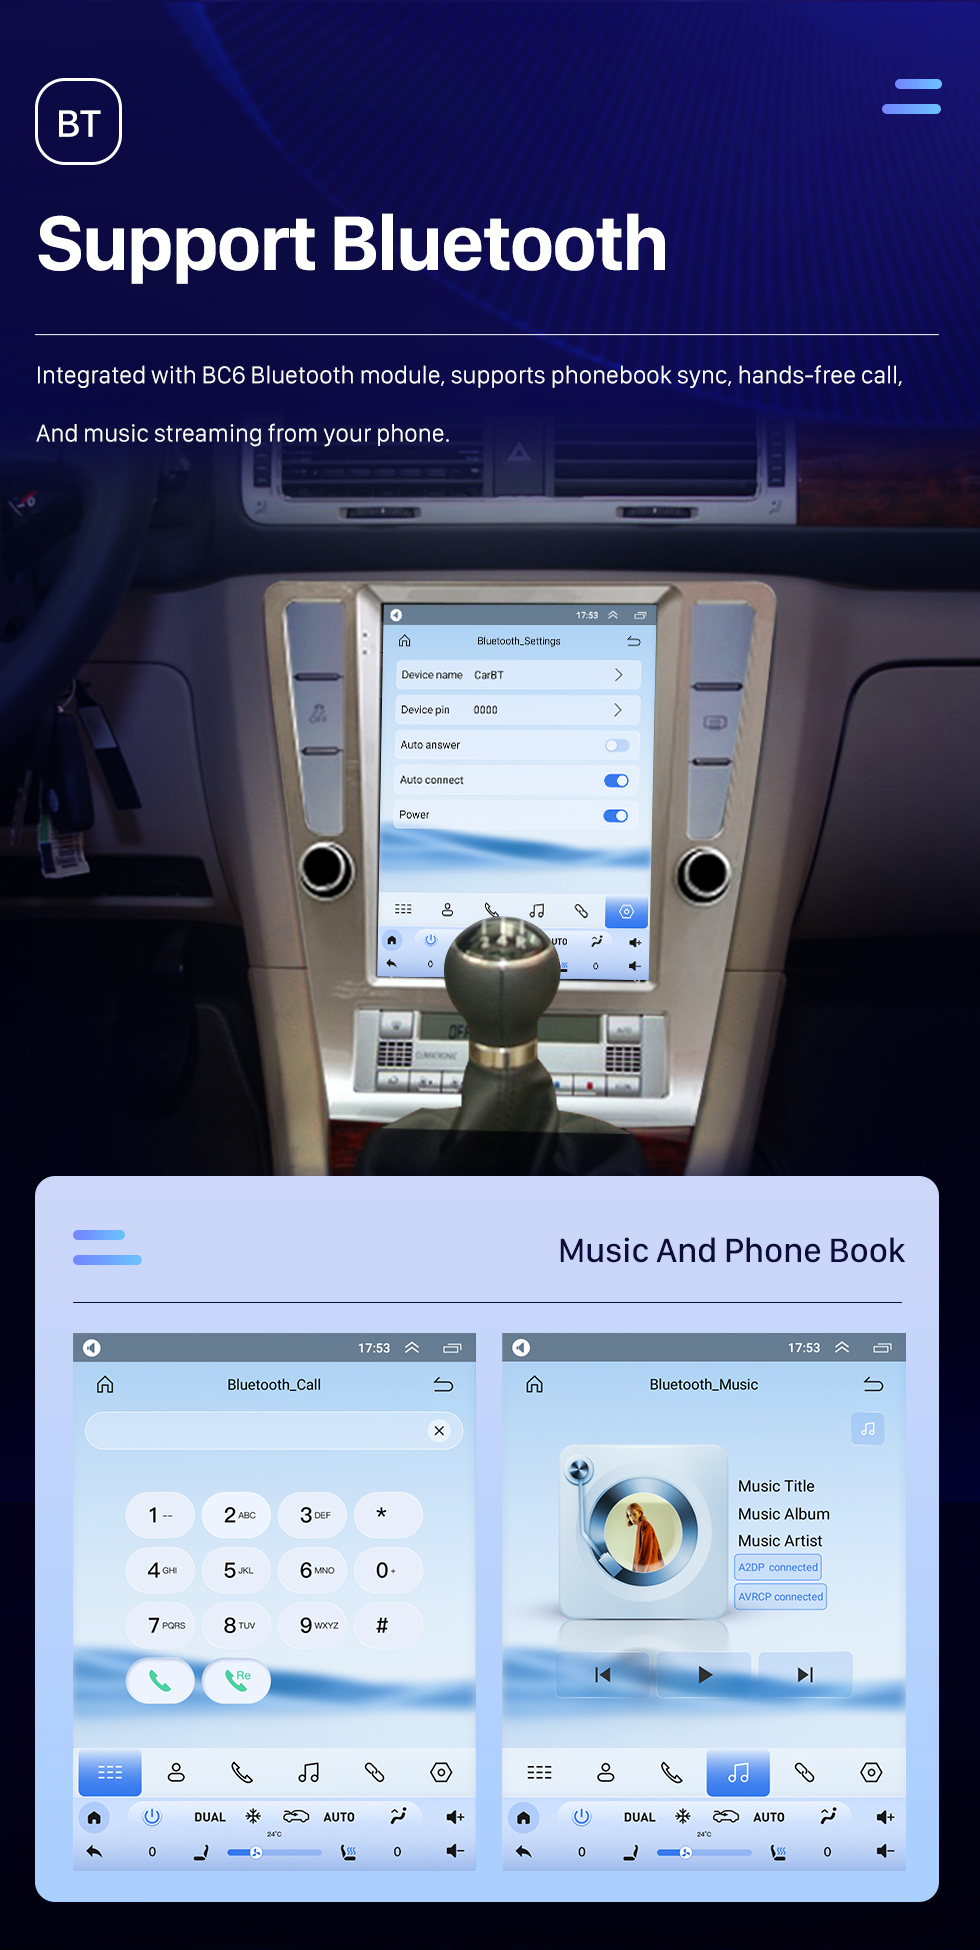 Seicane Para 2004-2010 Volkswagen Passat b7 Rádio 9,7 polegadas Android 10.0 HD Touchscreen Bluetooth com sistema de navegação GPS Suporte para carplay 1080P AHD Câmera DSP TPMS OBD2